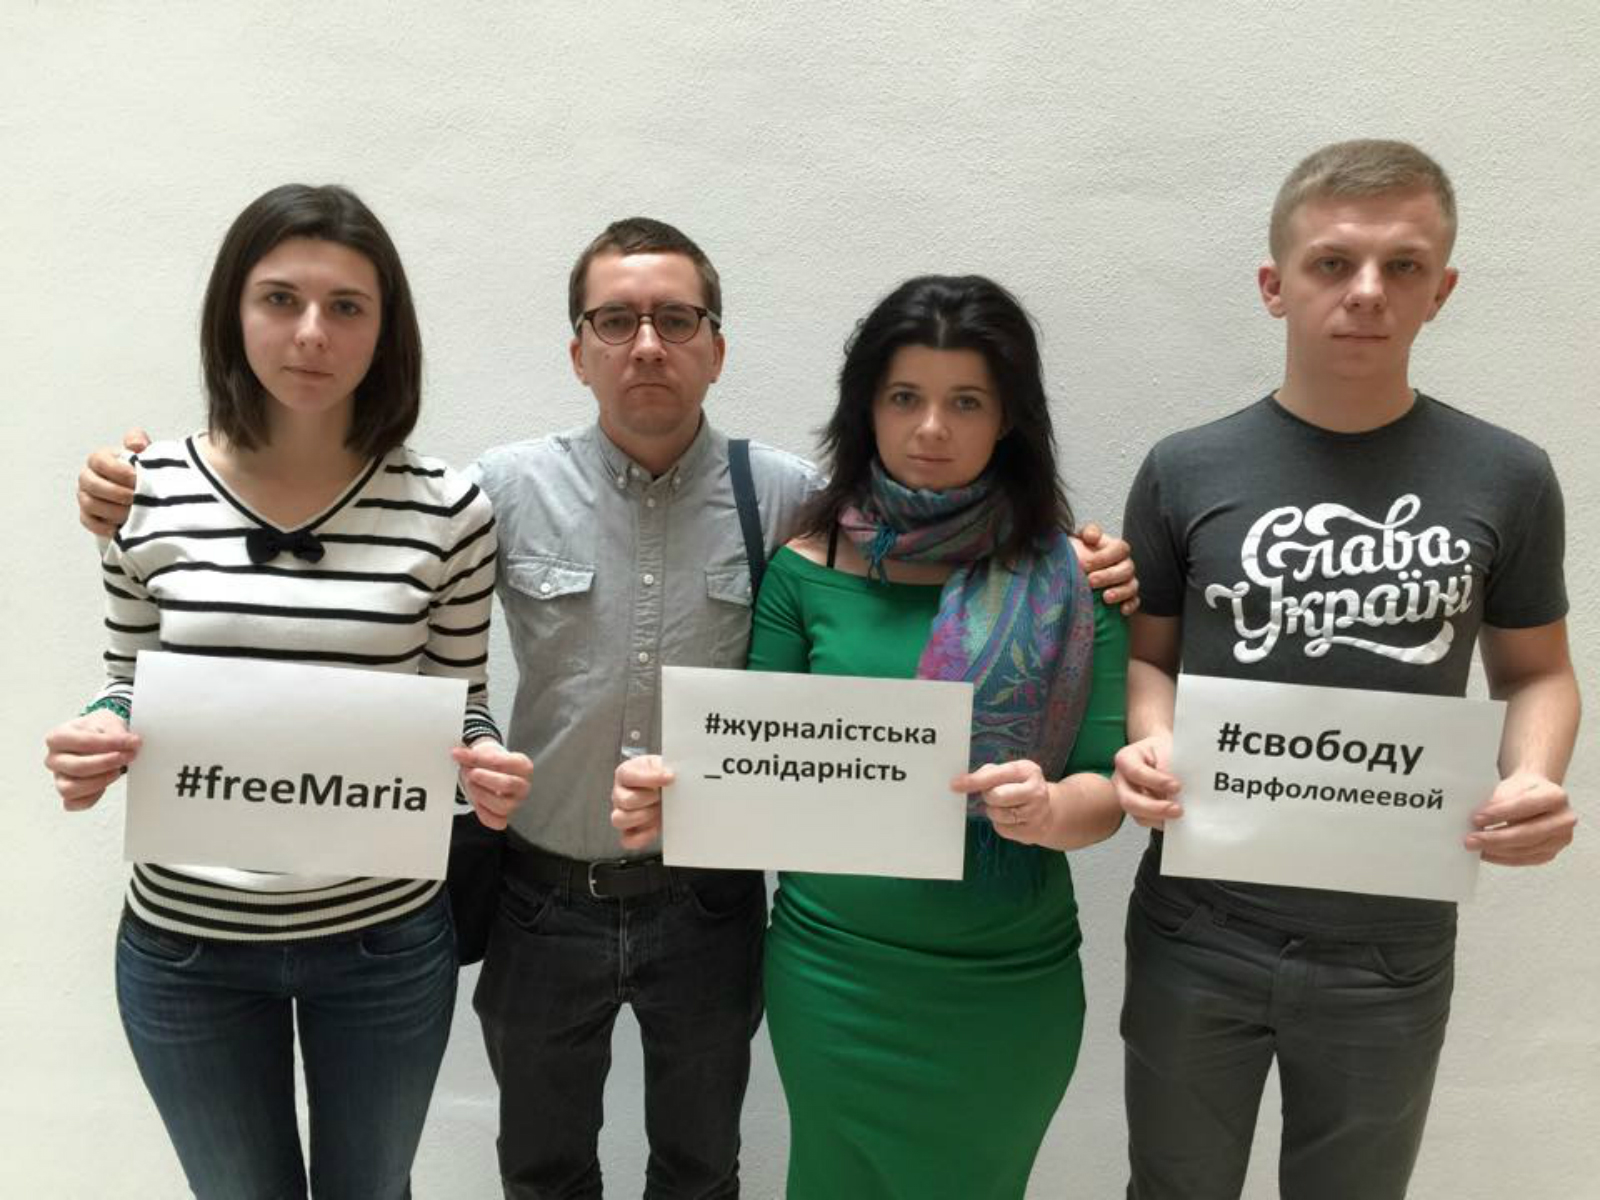 Молоді журналісти з України у Відні виступили у підтримку Варфоломеєвої